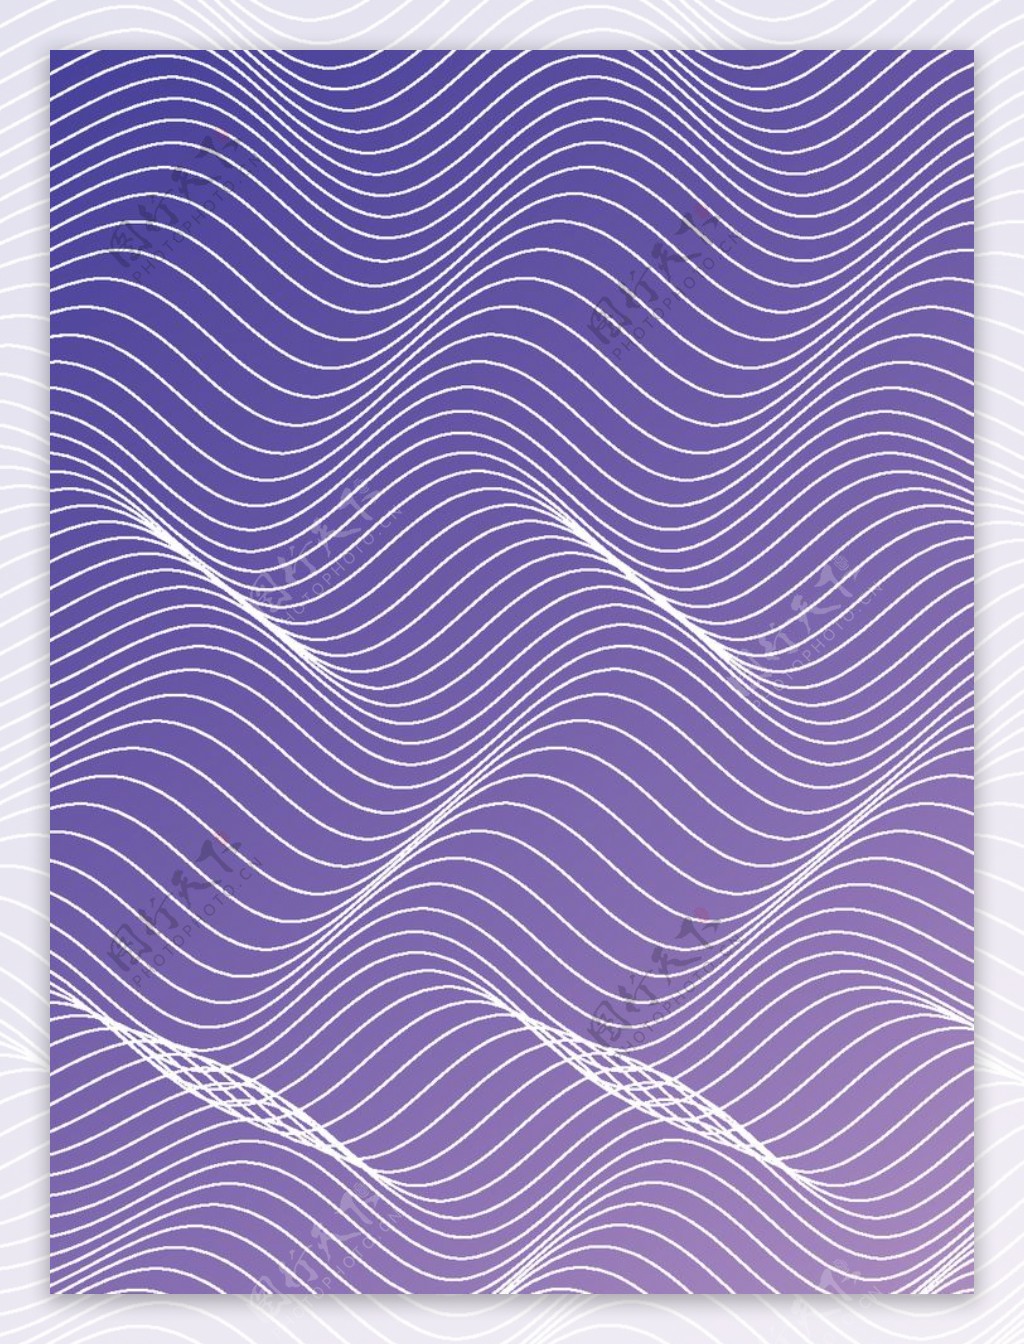 紫色立体线条背景